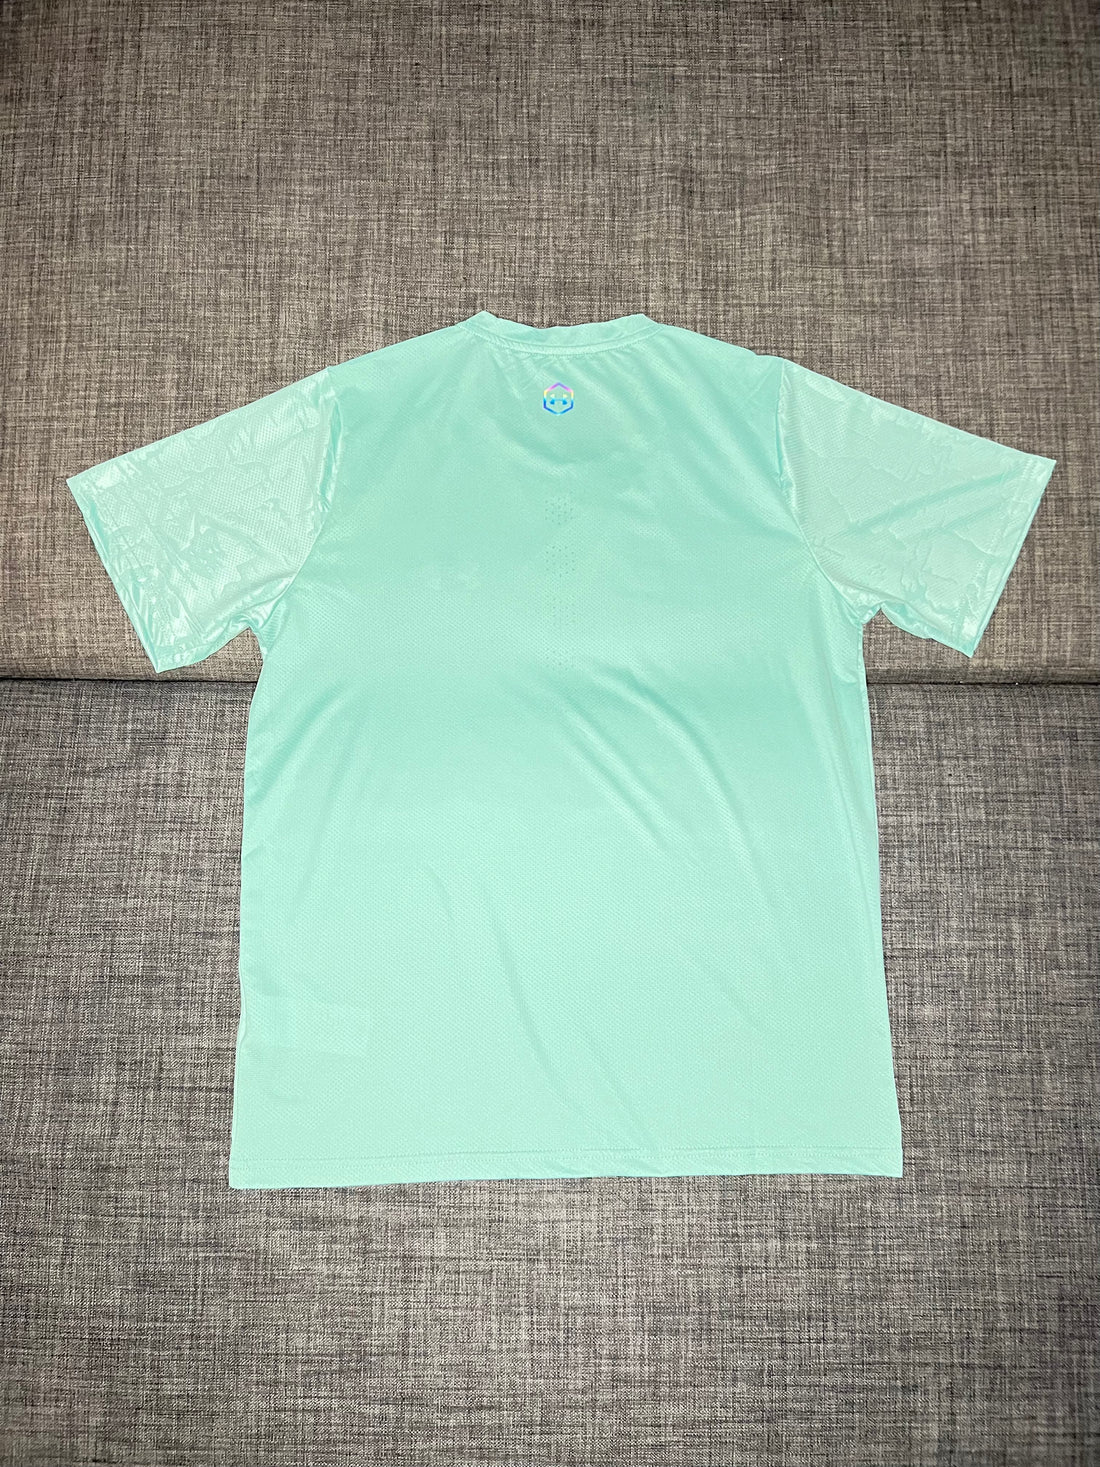 NEW T-shirt Vert Light Fluorescent